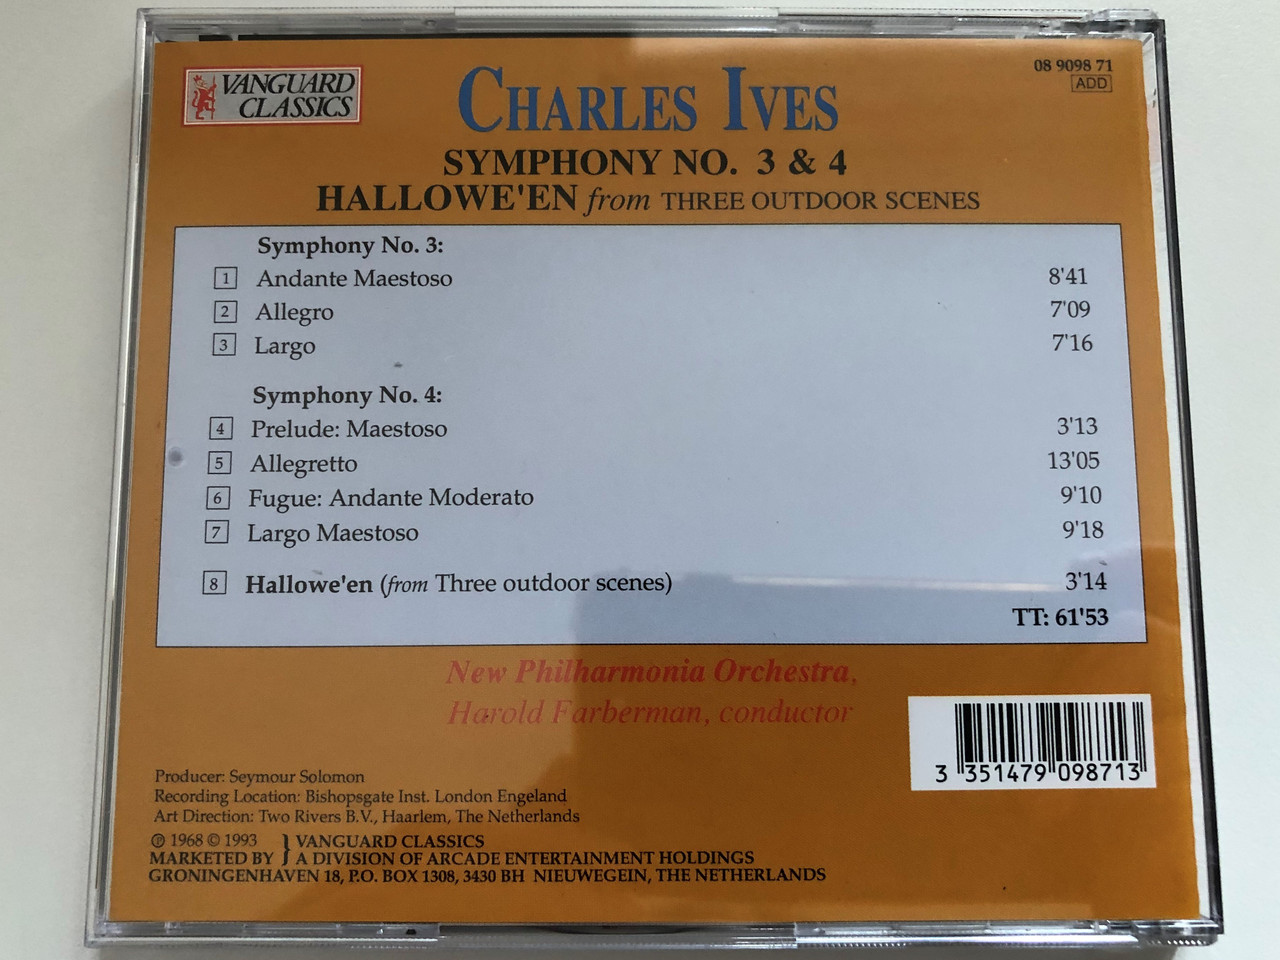 https://cdn10.bigcommerce.com/s-62bdpkt7pb/products/0/images/270999/Charles_Ives_-_Symphony_No._3_4_Halloween_from_Three_Outdoor_Scenes_-_New_Philharmonia_Orchestra_Harold_Farberman_Vanguard_Classics_Audio_CD_1993_08_9098_71_8__87950.1680014502.1280.1280.JPG?c=2&_gl=1*kjjni1*_ga*MjA2NTIxMjE2MC4xNTkwNTEyNTMy*_ga_WS2VZYPC6G*MTY4MDAwODU4Mi44MjQuMS4xNjgwMDE0MjI0LjI1LjAuMA..